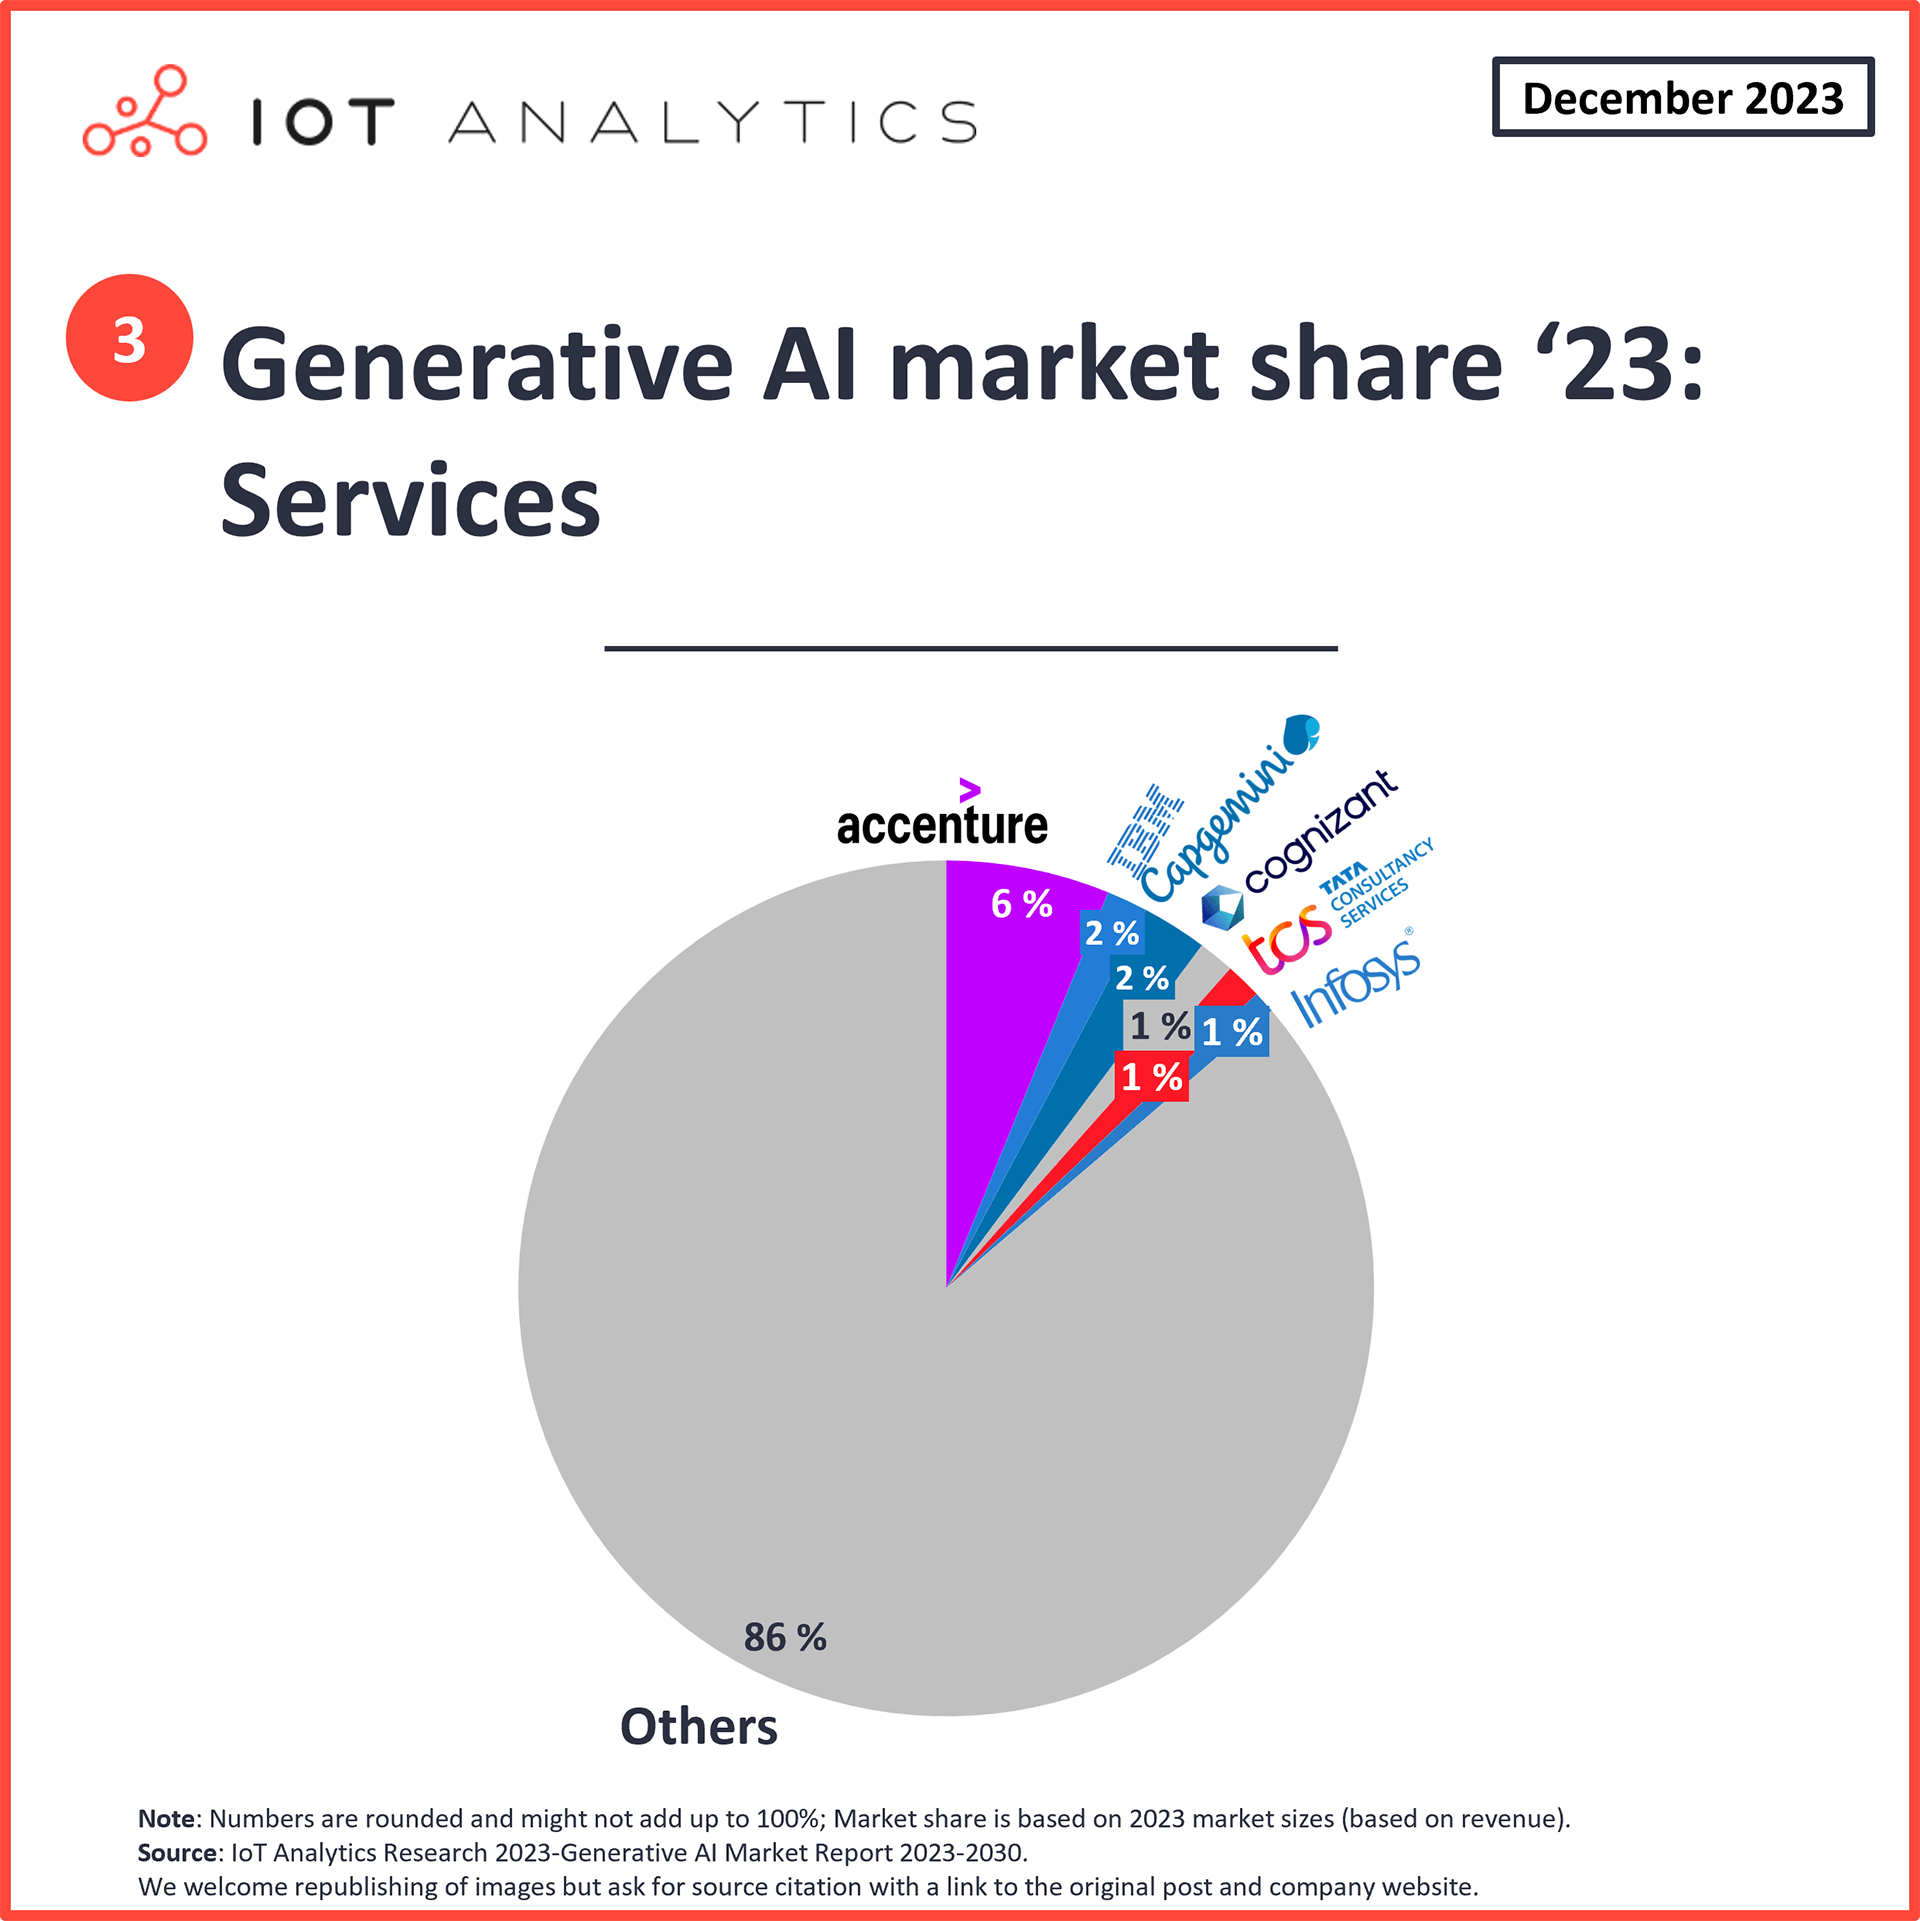 Graphic: Generative AI services market share 2023